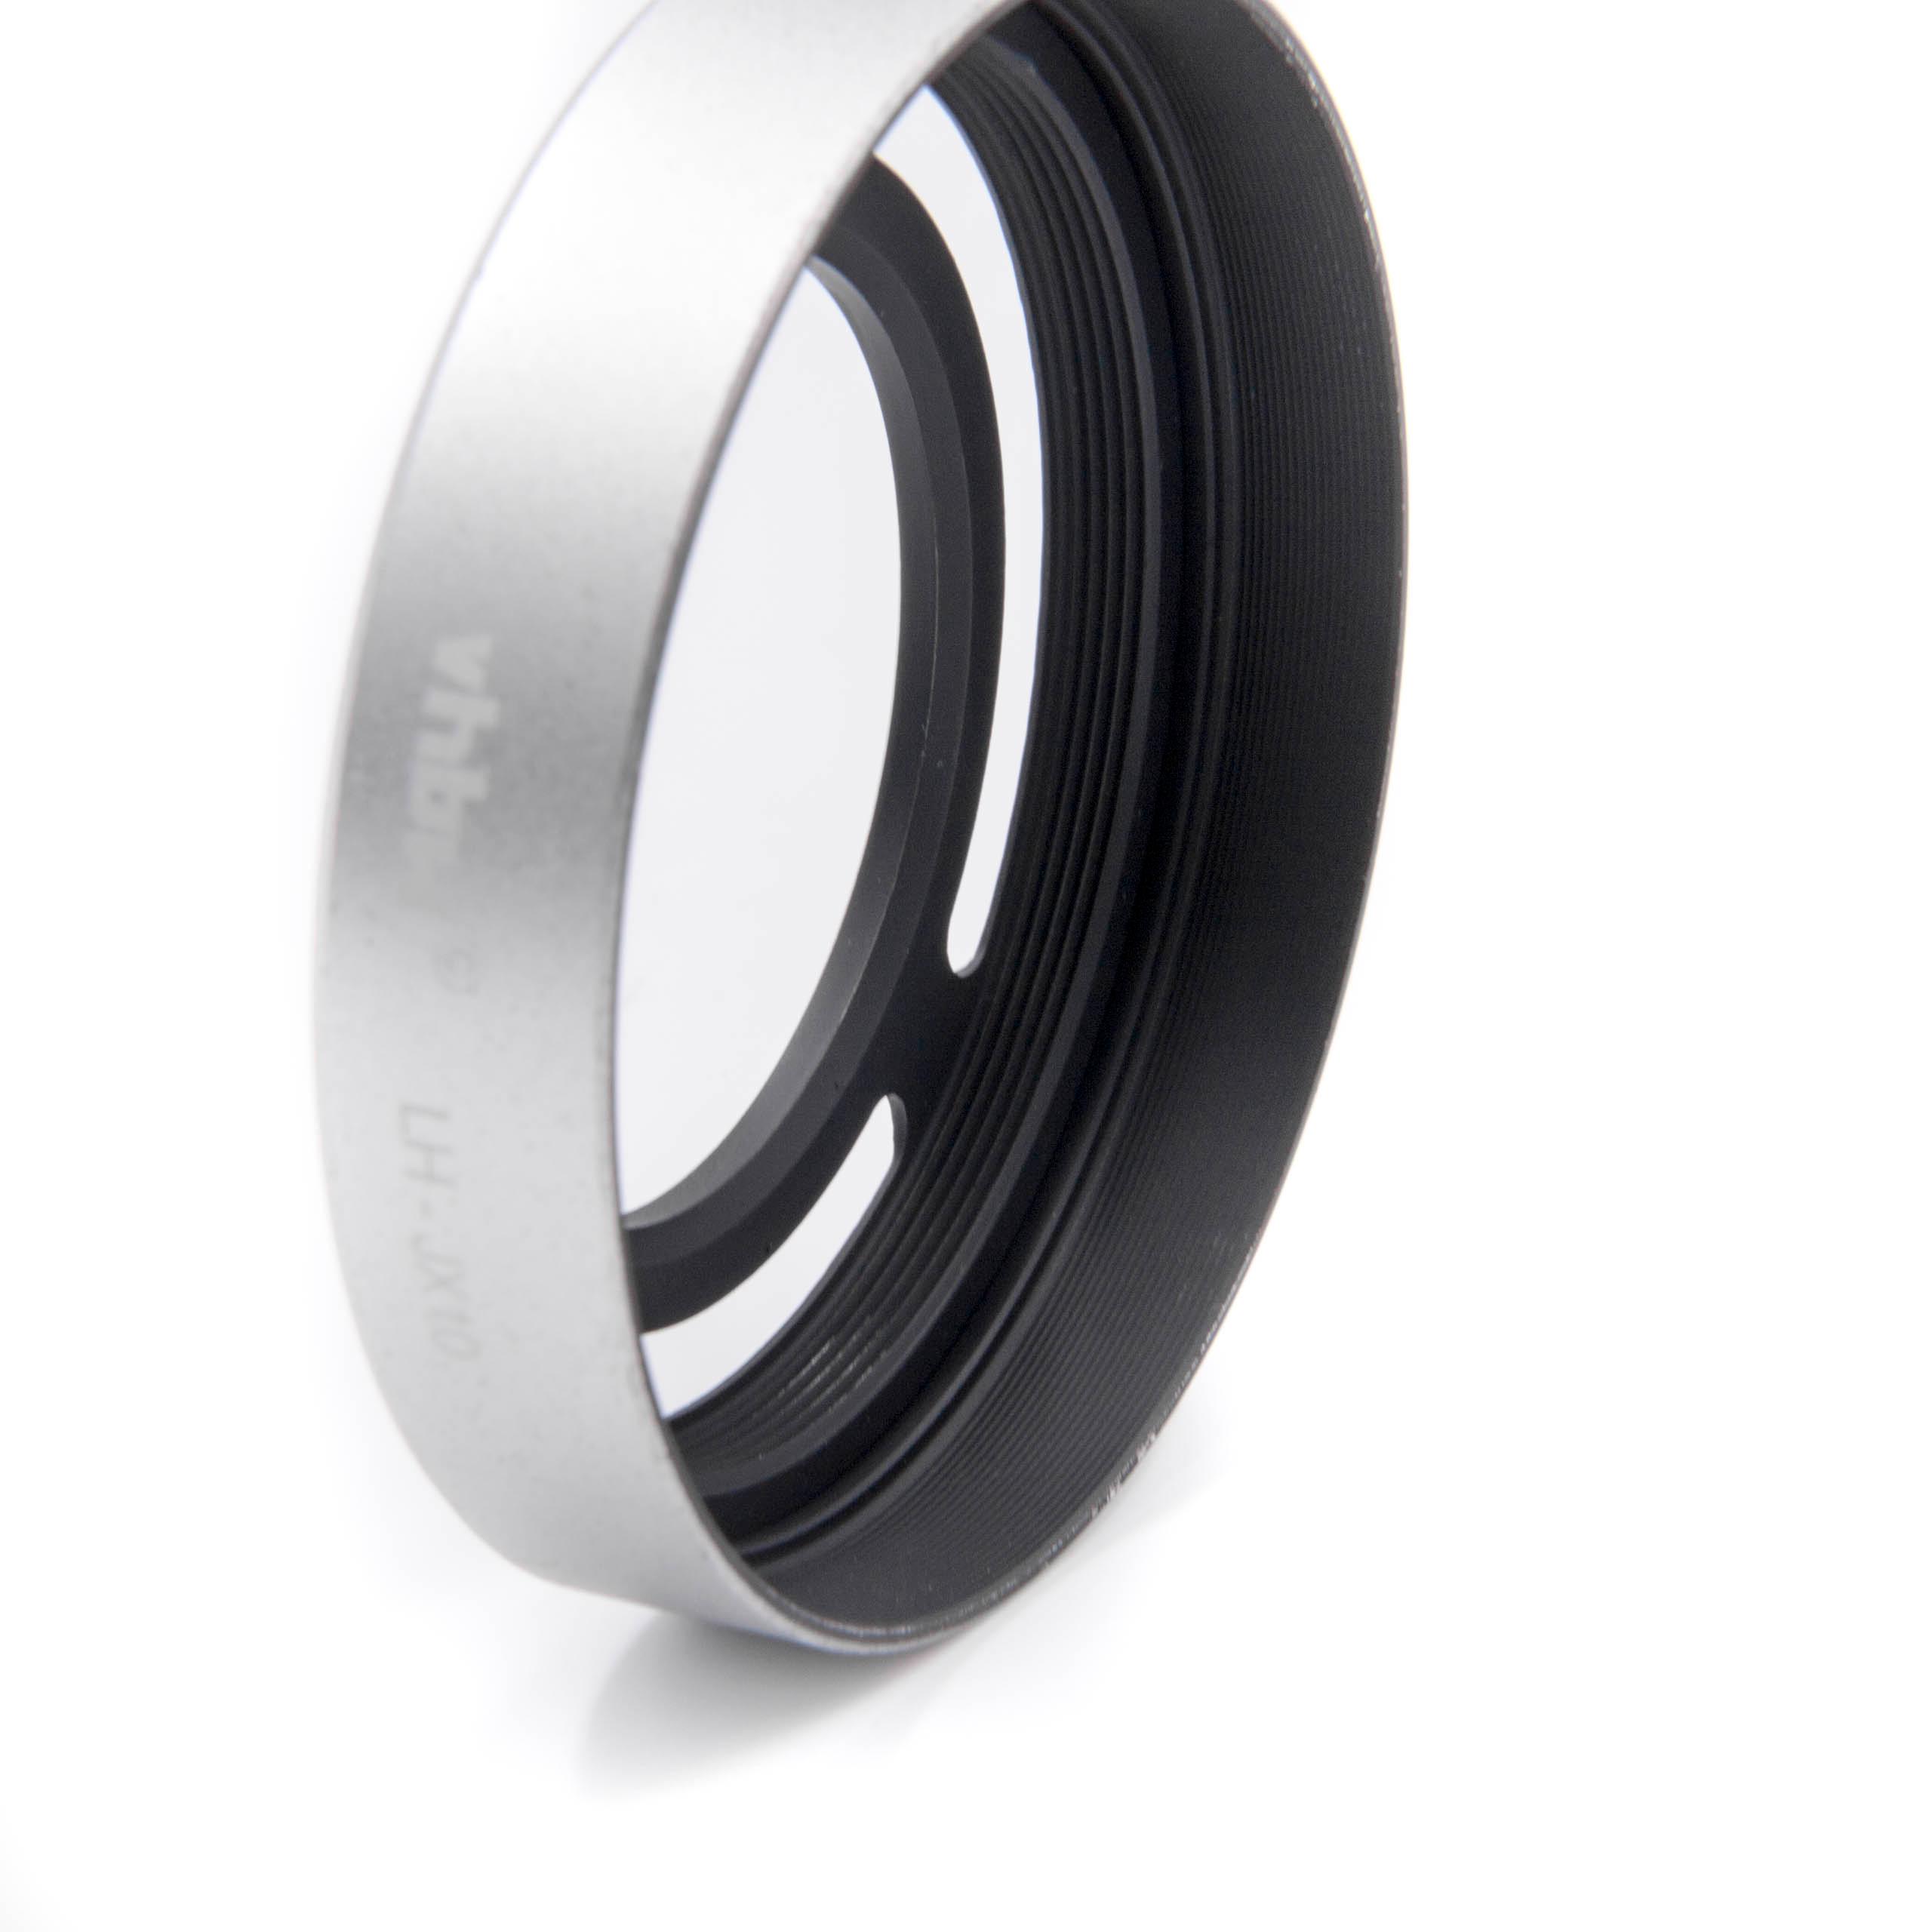 Lens Hood as Replacement for Fuji / Fujifilm Lens LH-X10